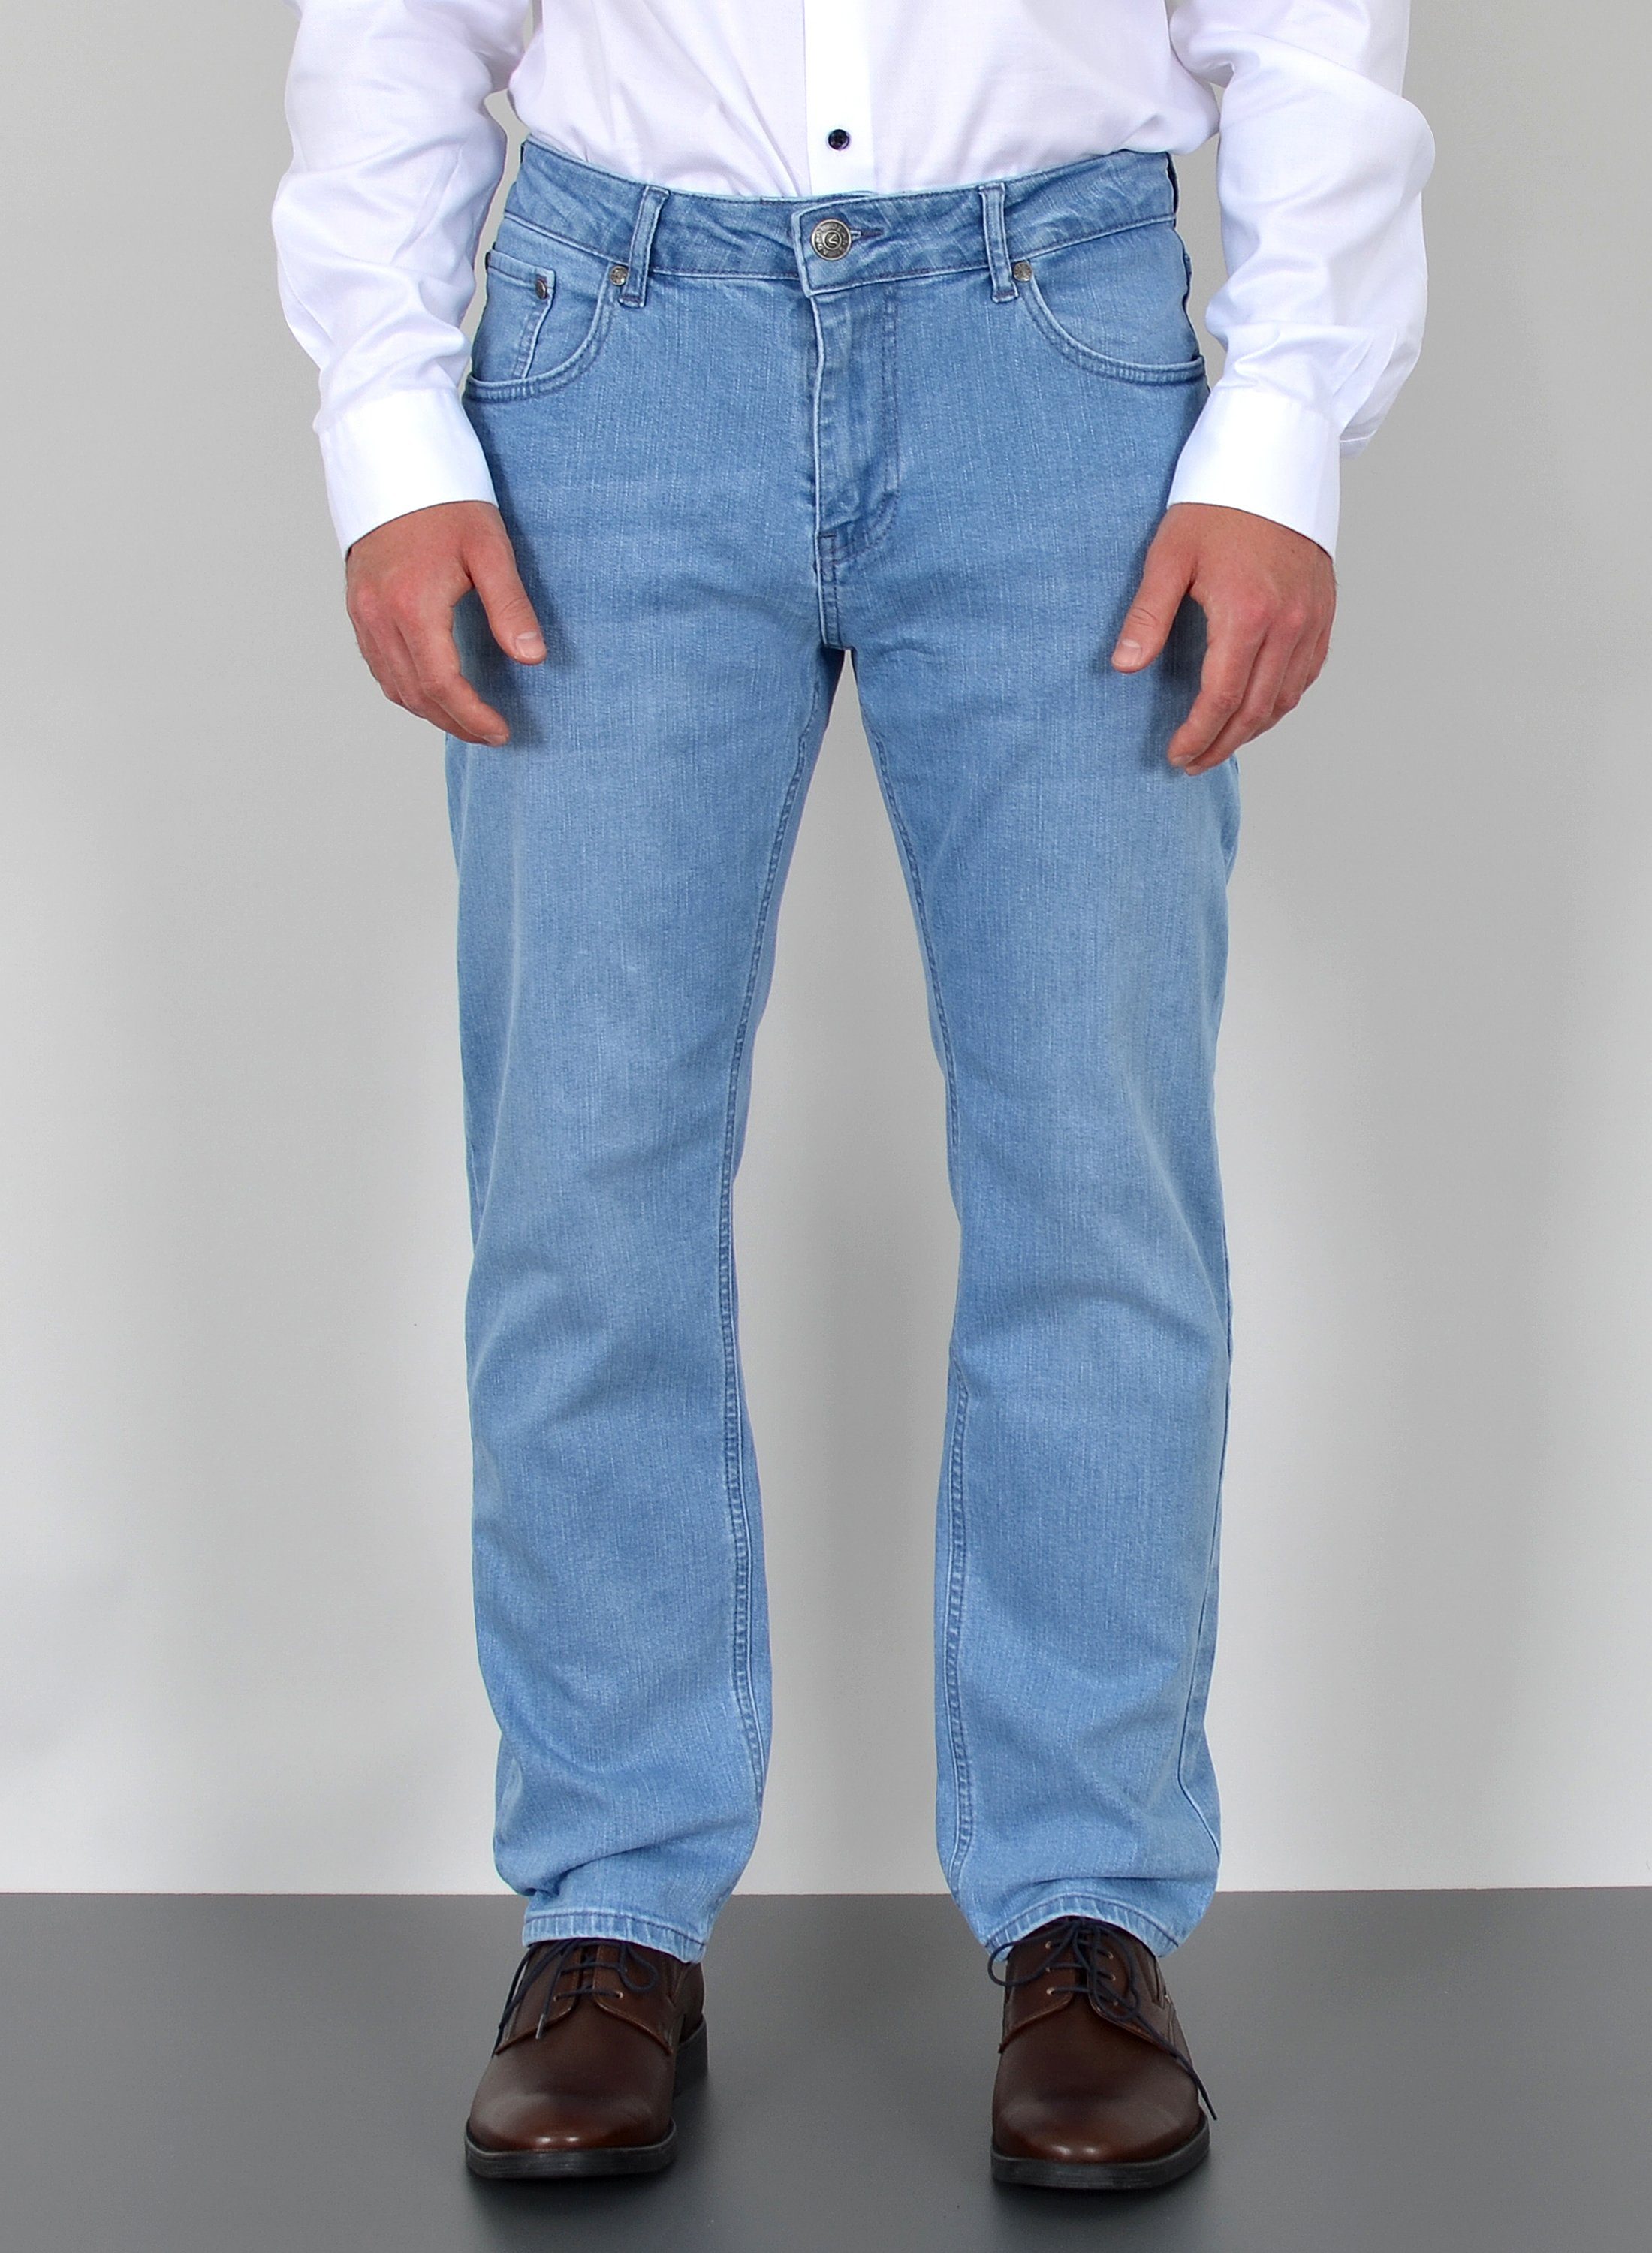 RELLO & REESE Jeans Hose Regular Straight Fit Hose Grau/Schwarz/Blau NEU 